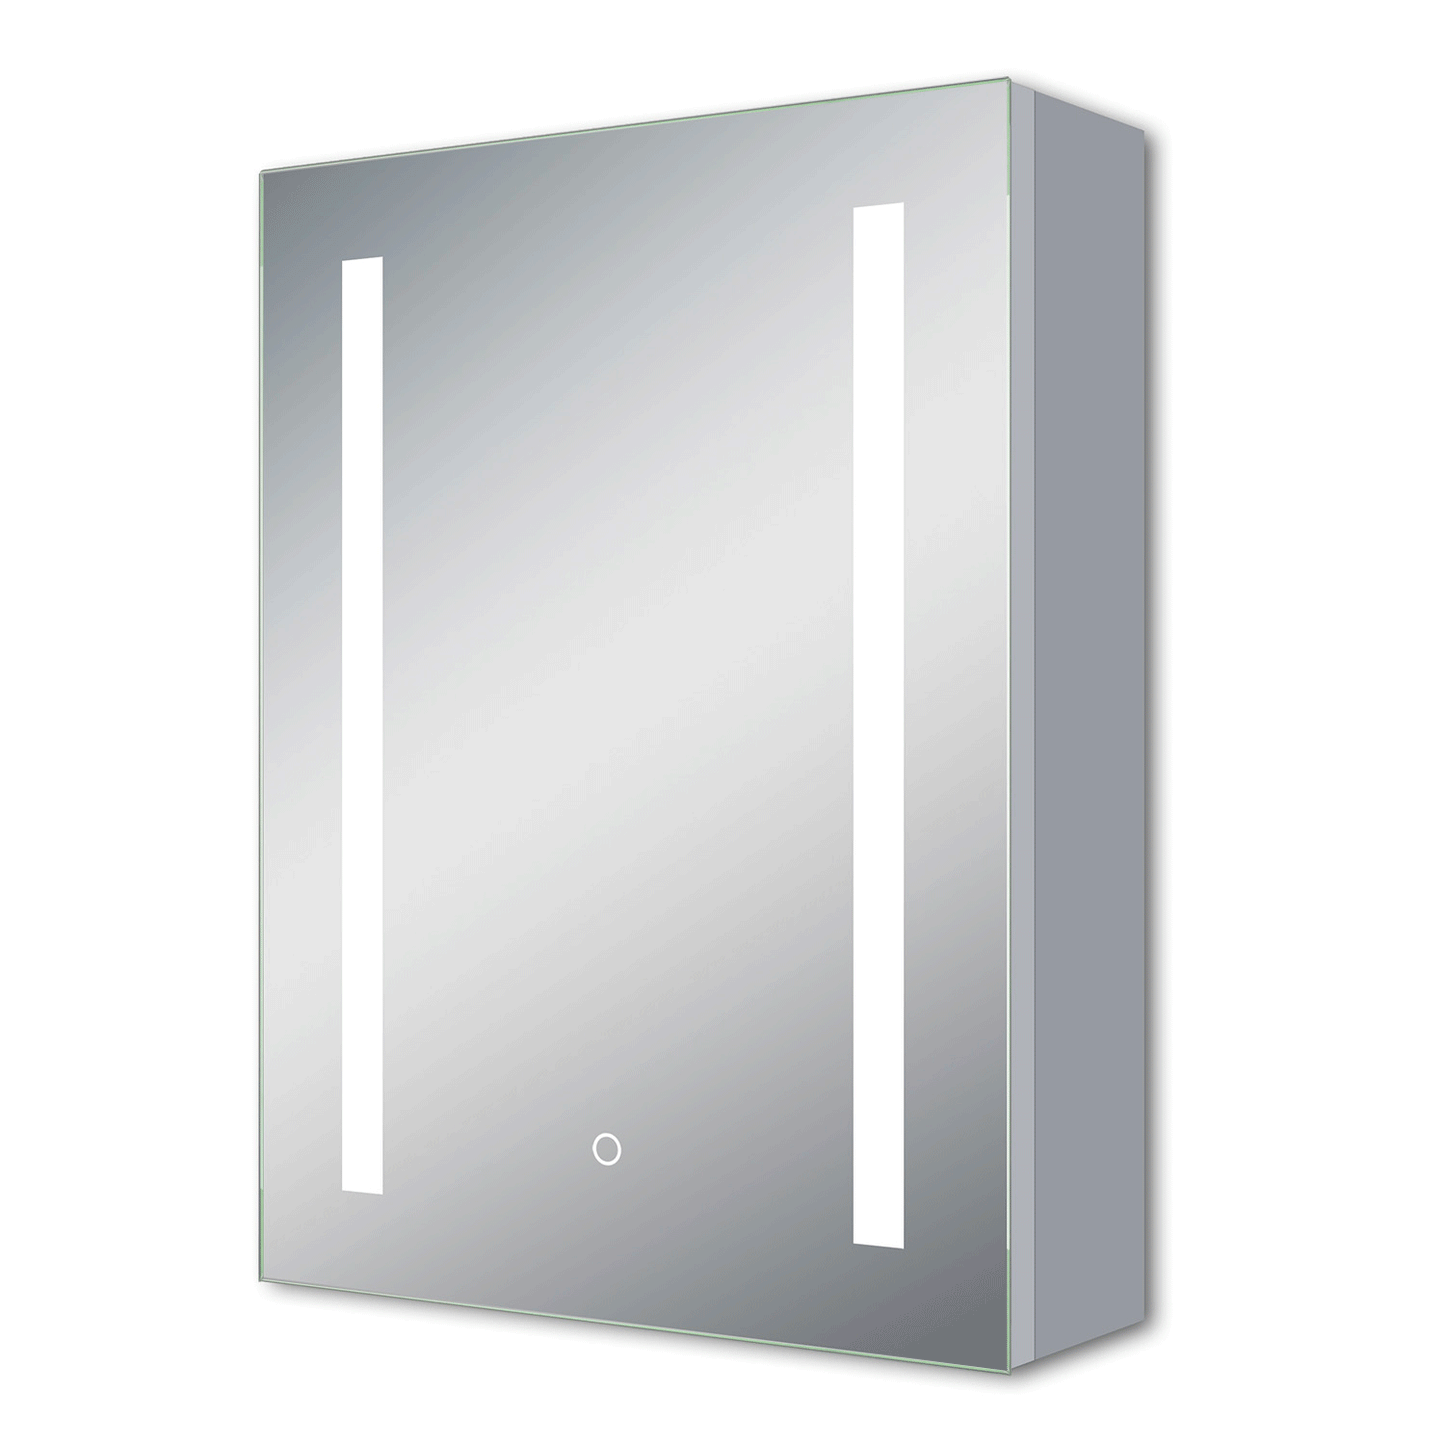 LED Spiegelschrank ARYA Badspiegelschrank mit Beleuchtung, Aluminium,  Doppelseitiger Spiegel, IR-Sensor Schalter – Aica Sanitaer